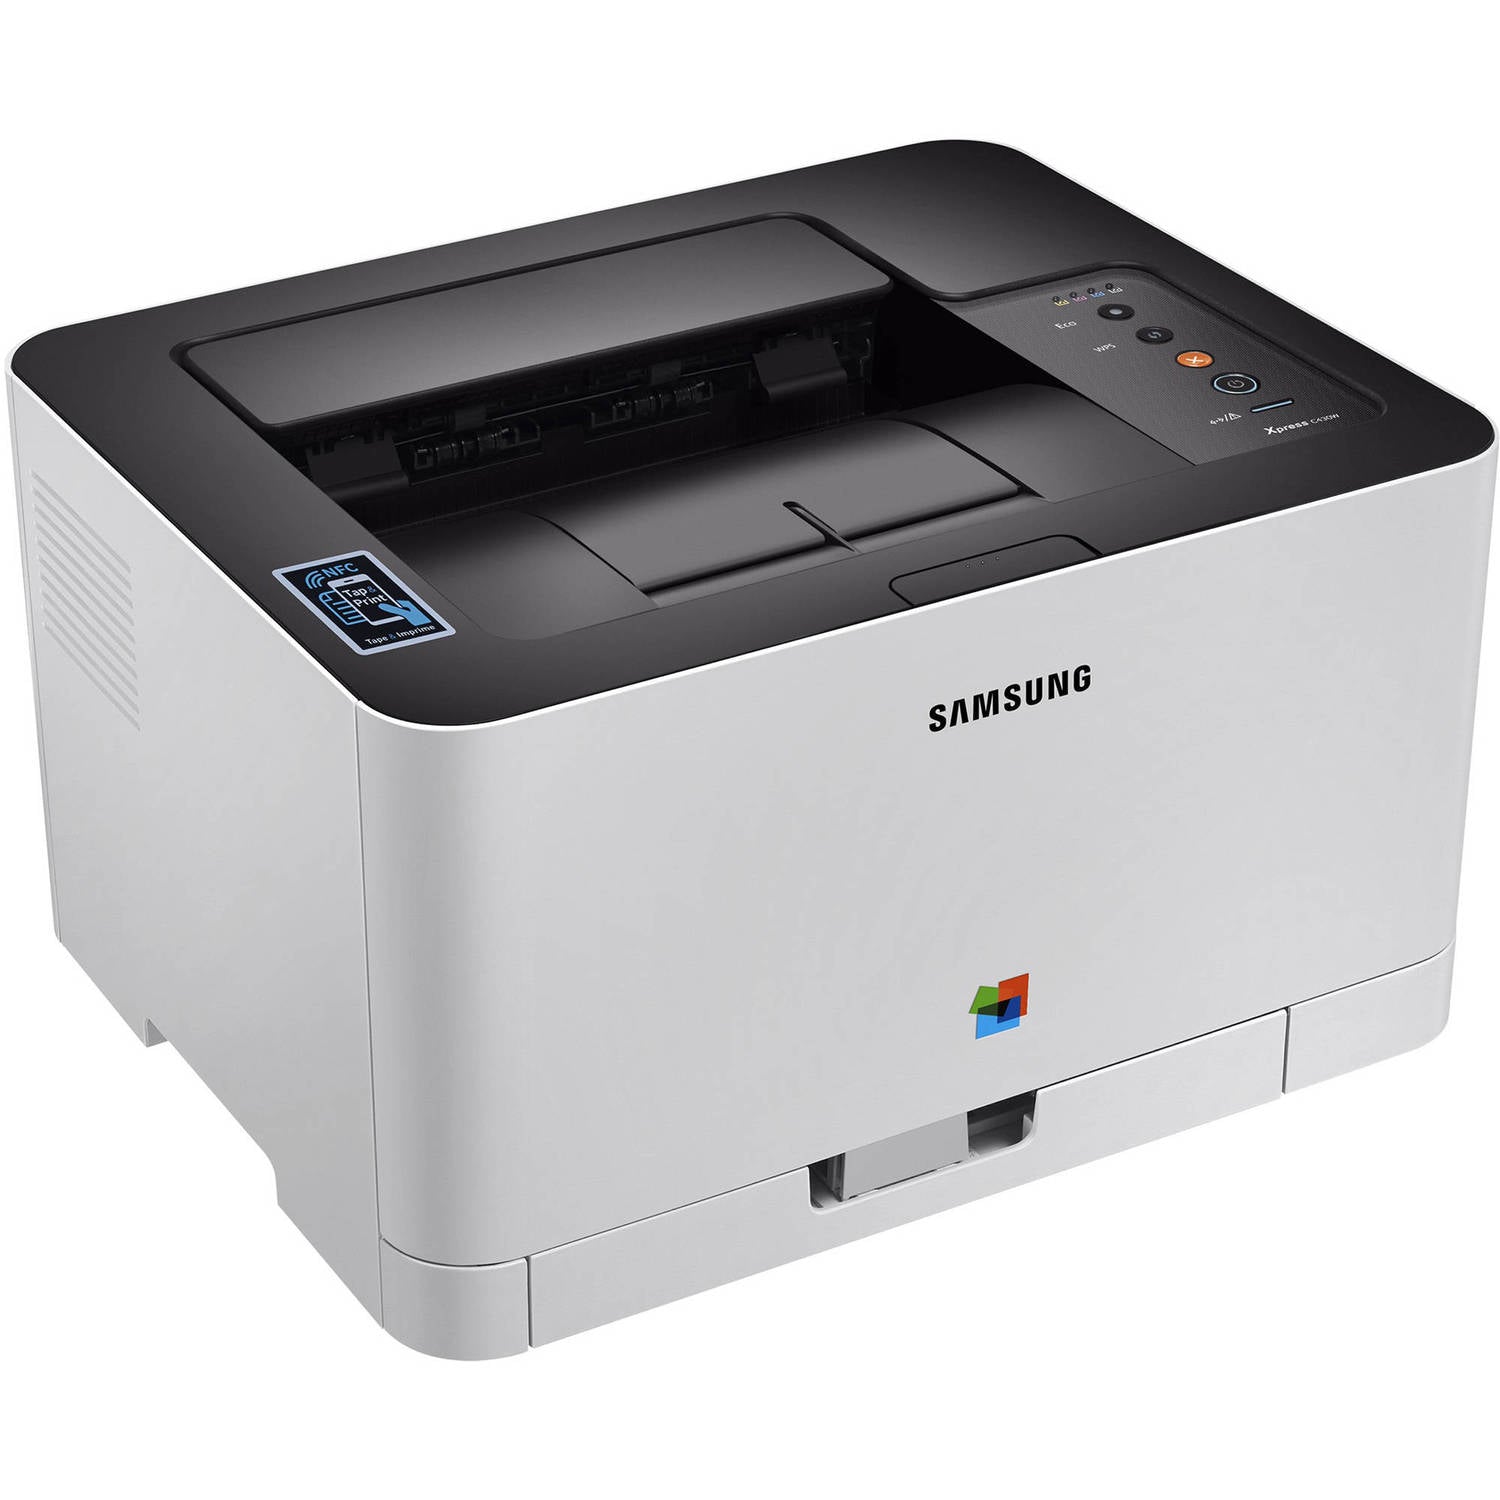 Samsung SLC430W/XAA Xpress Color Laser Printer